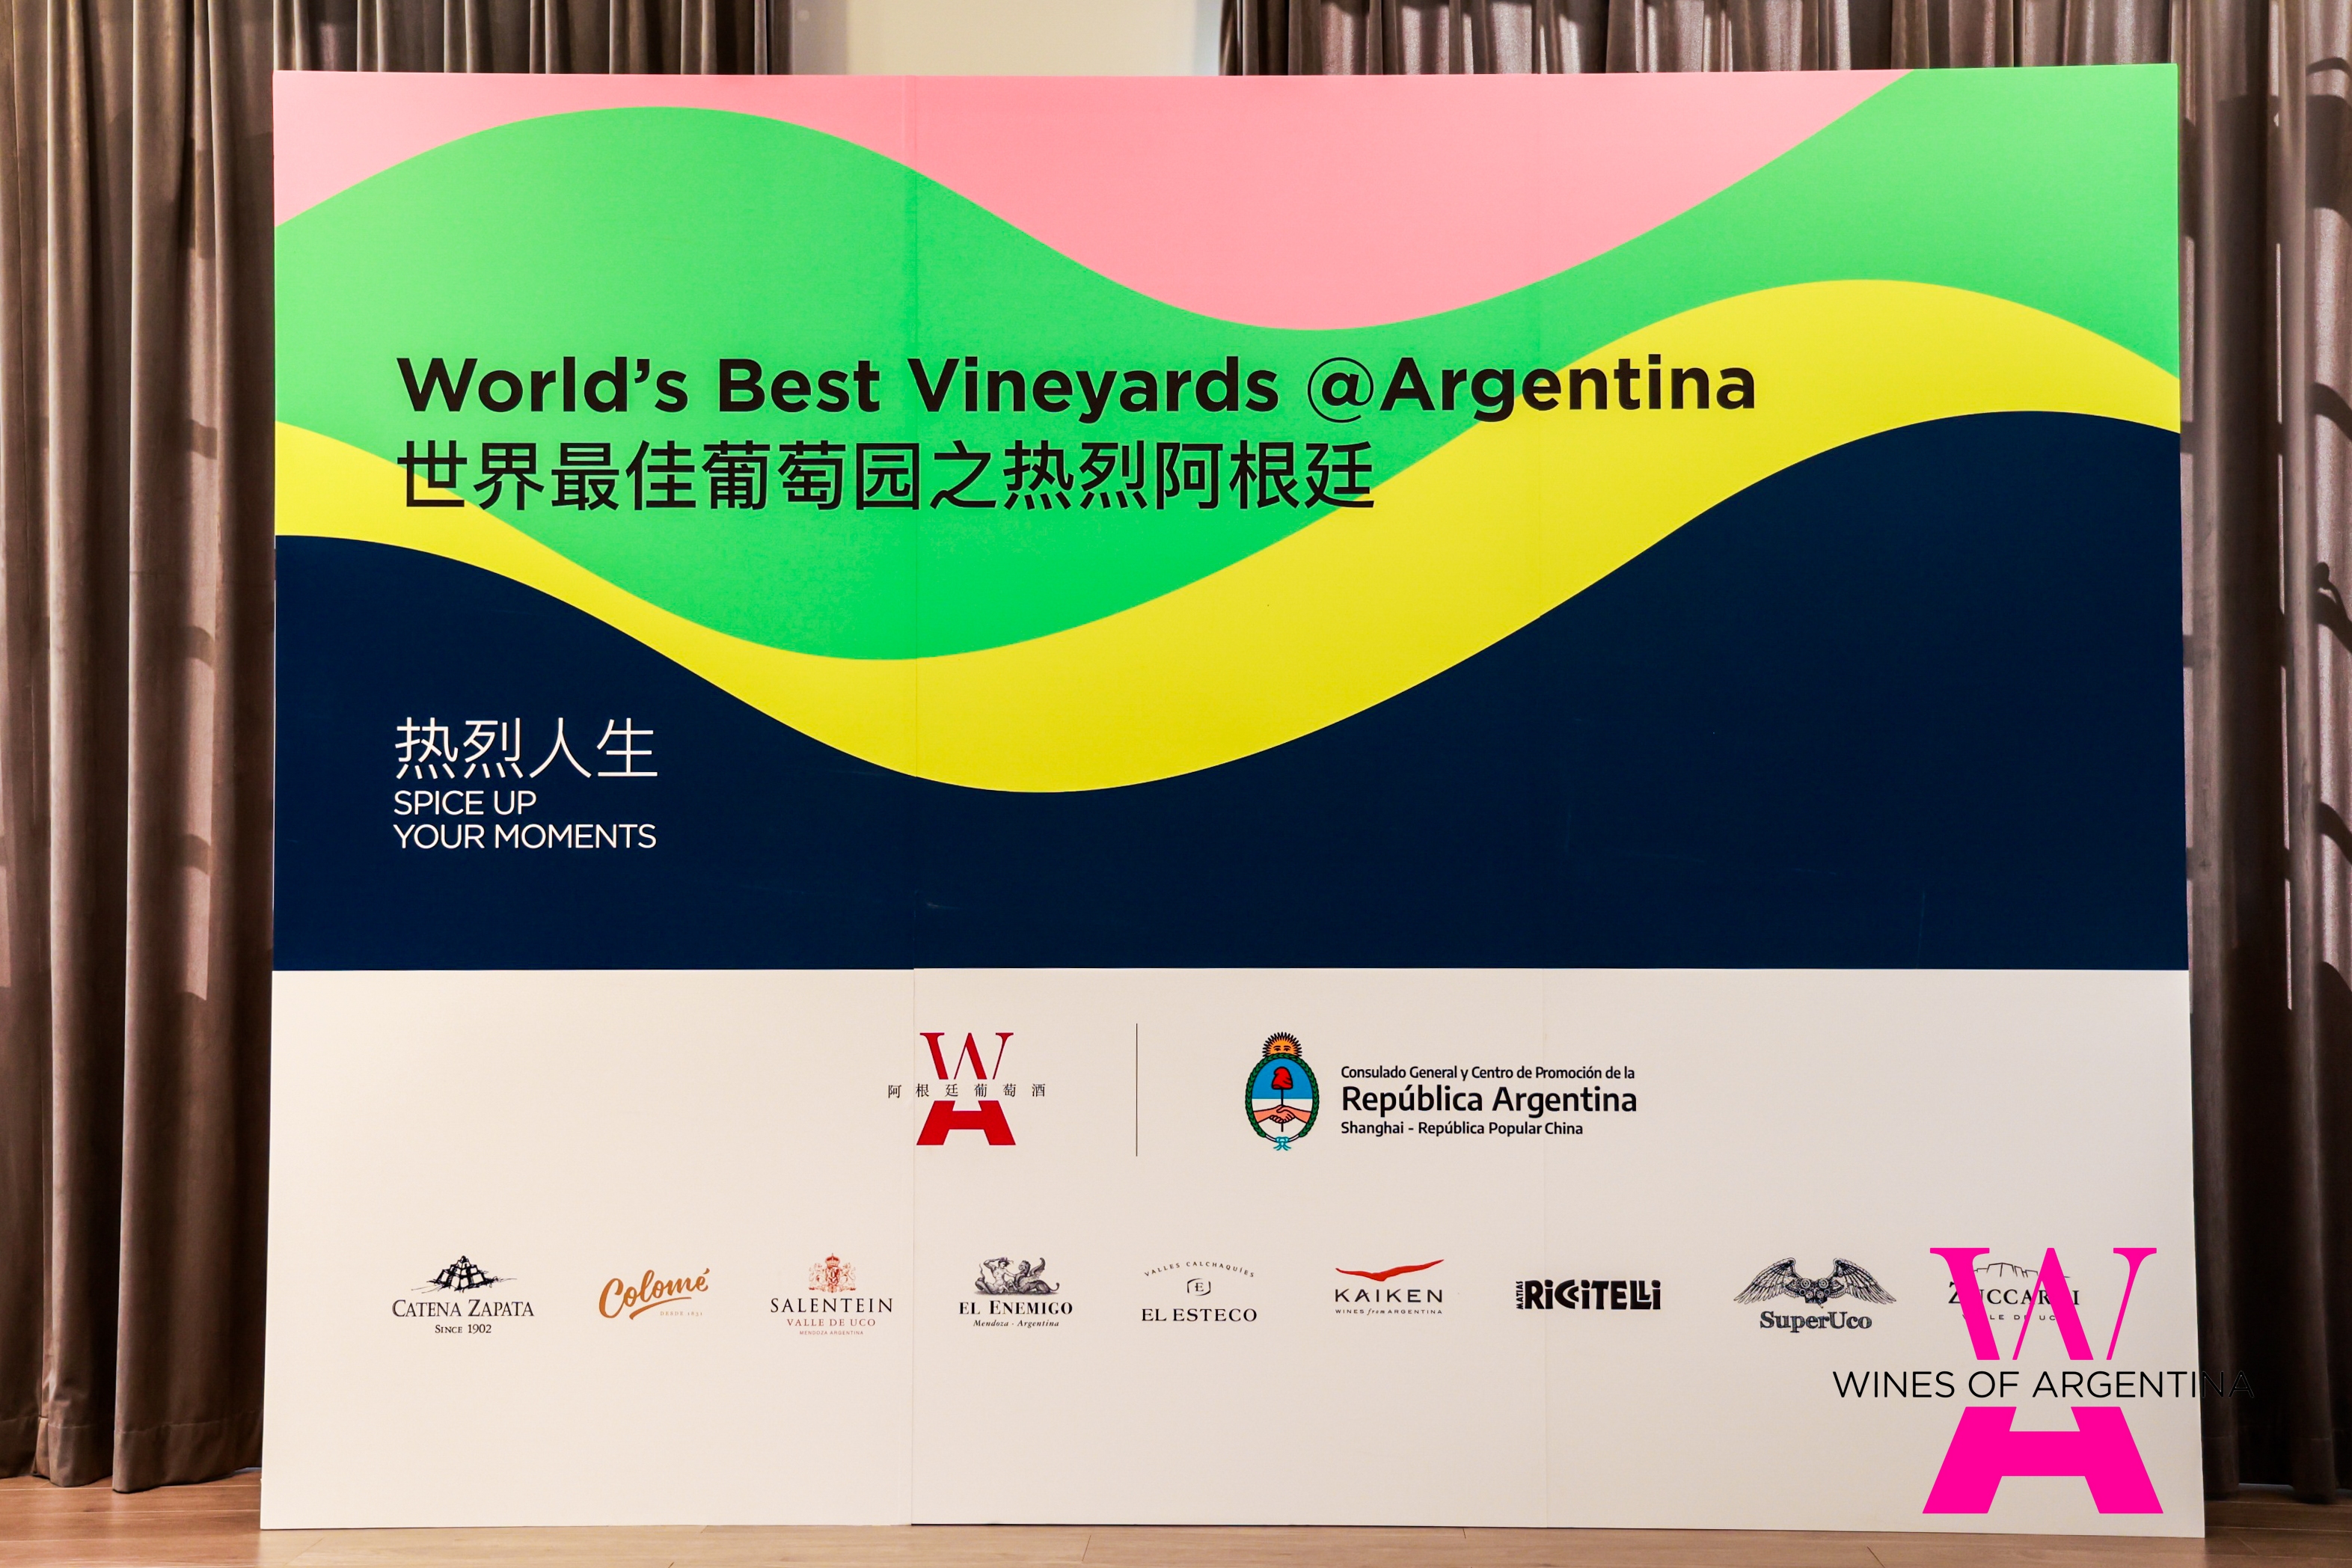 【世界最佳葡萄园之热烈阿根廷】路演活动走进北京上海！